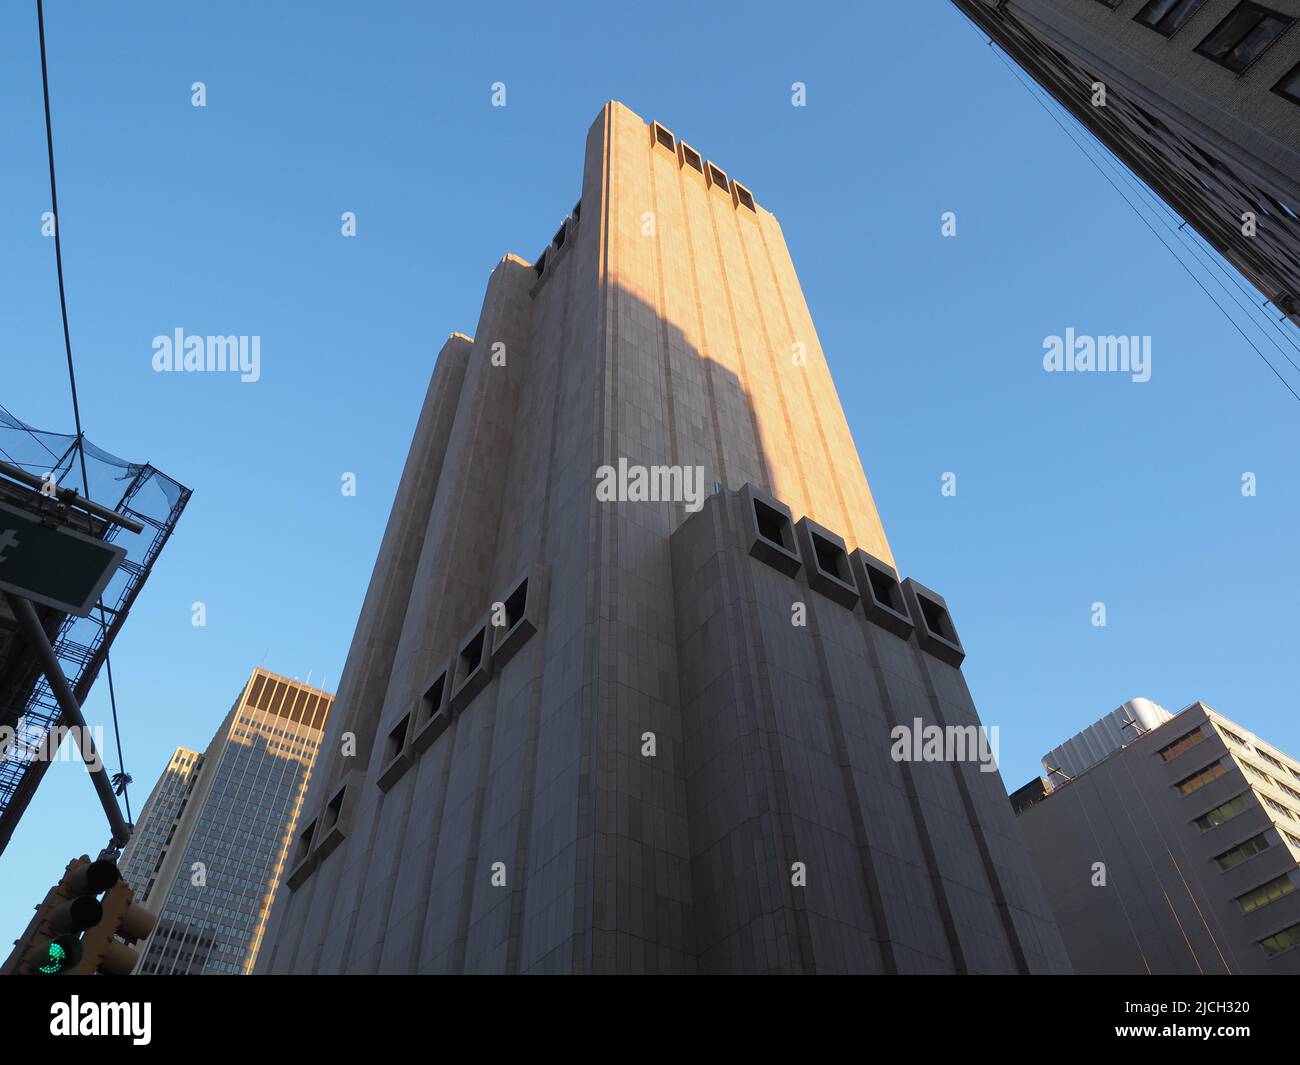 Bild von 33 Thomas Street, einem fensterlosen Gebäude in Manhattan. Stockfoto